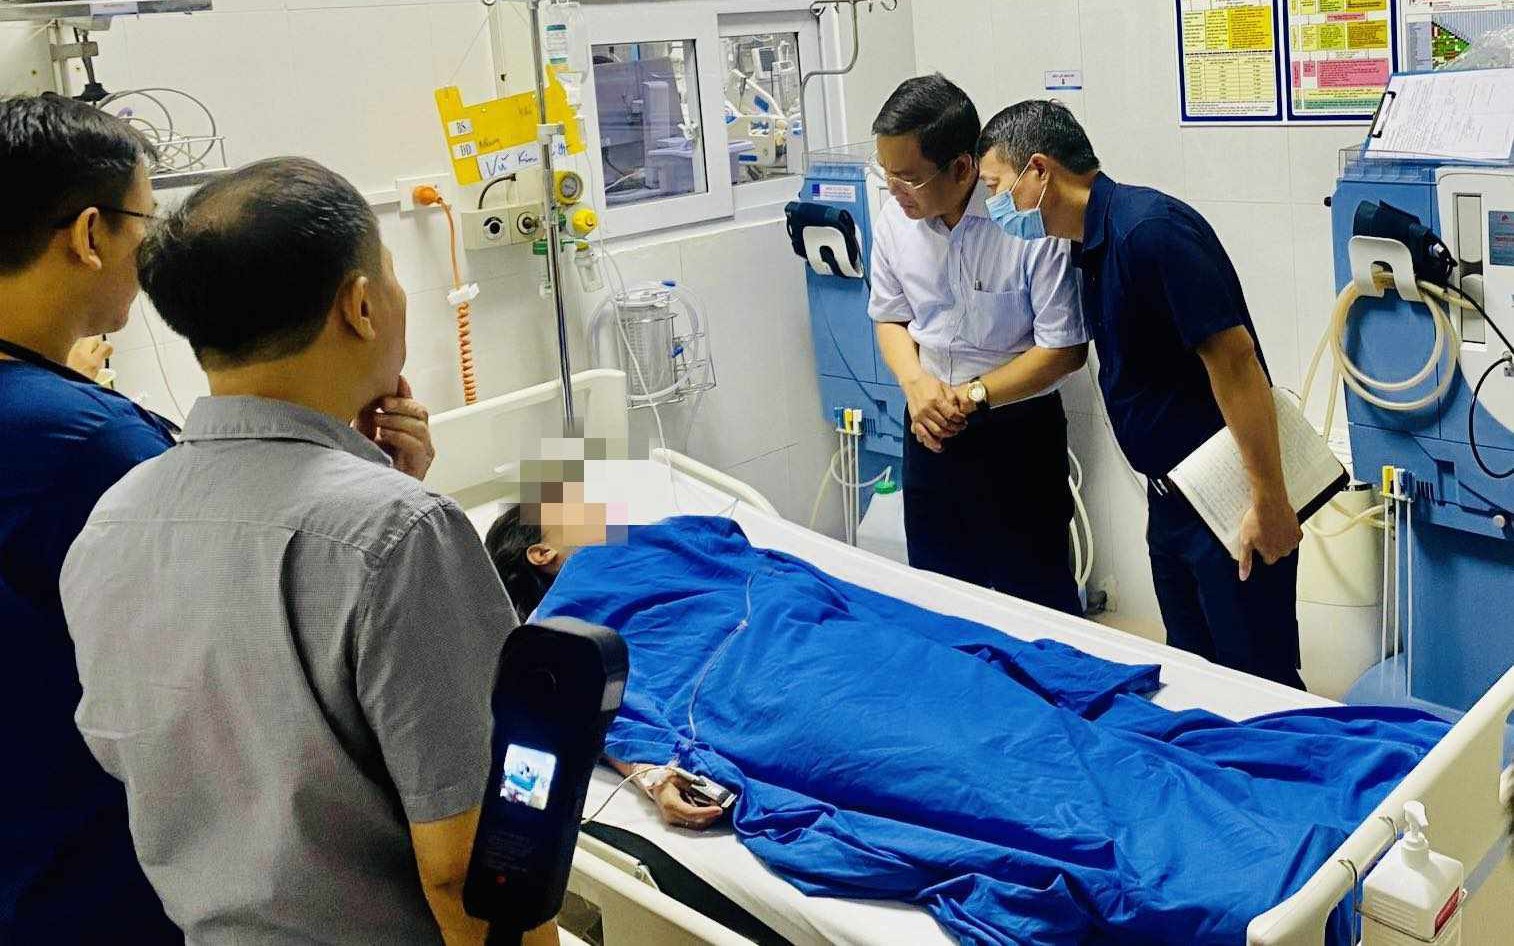 Các bệnh viện tập trung cao độ cấp cứu, điều trị nạn nhân vụ cháy chung cư mini ở Khương Hạ